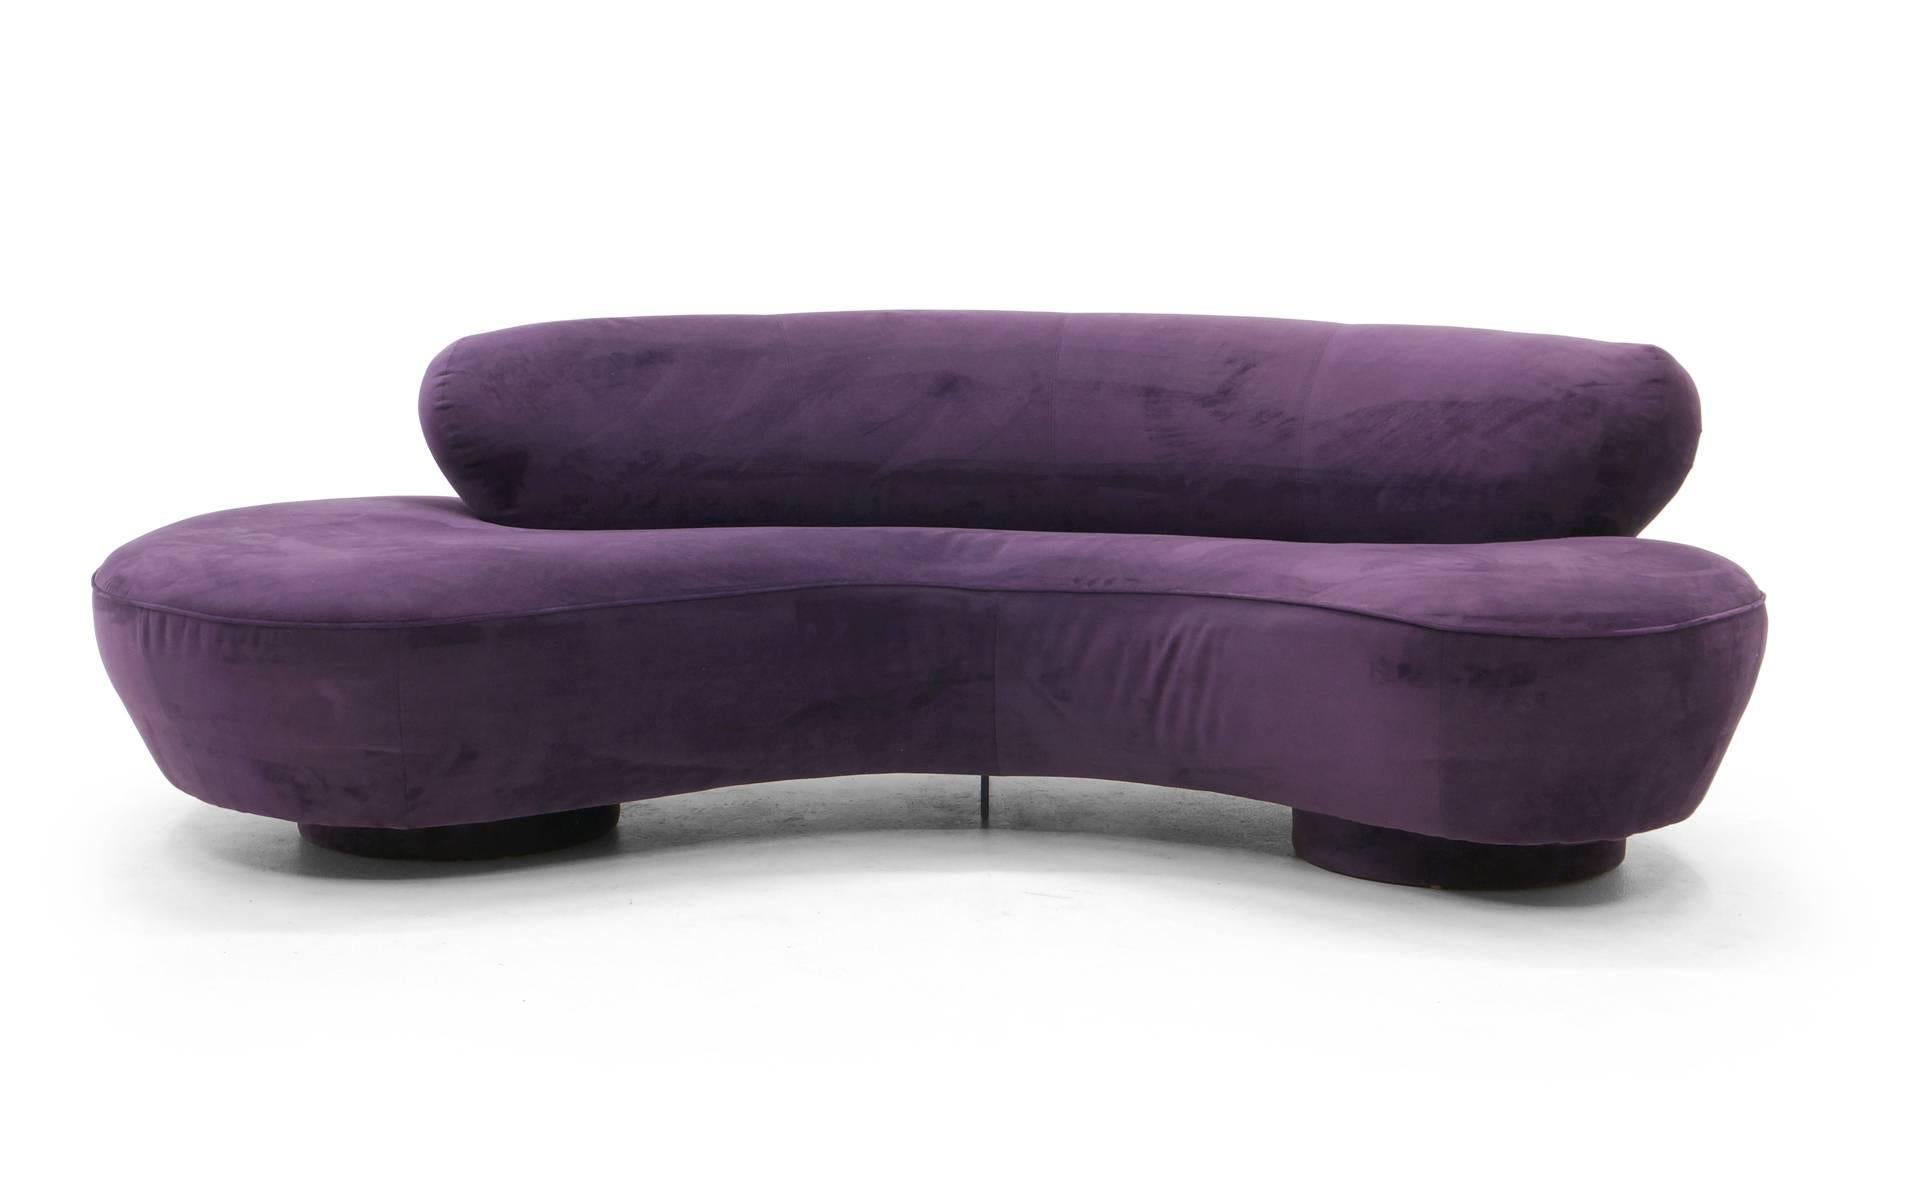 Upholstery Vladimir Kagan Cloud Sofas, Pair of Newly Upholstered in Purple/Plum Ultrasuede